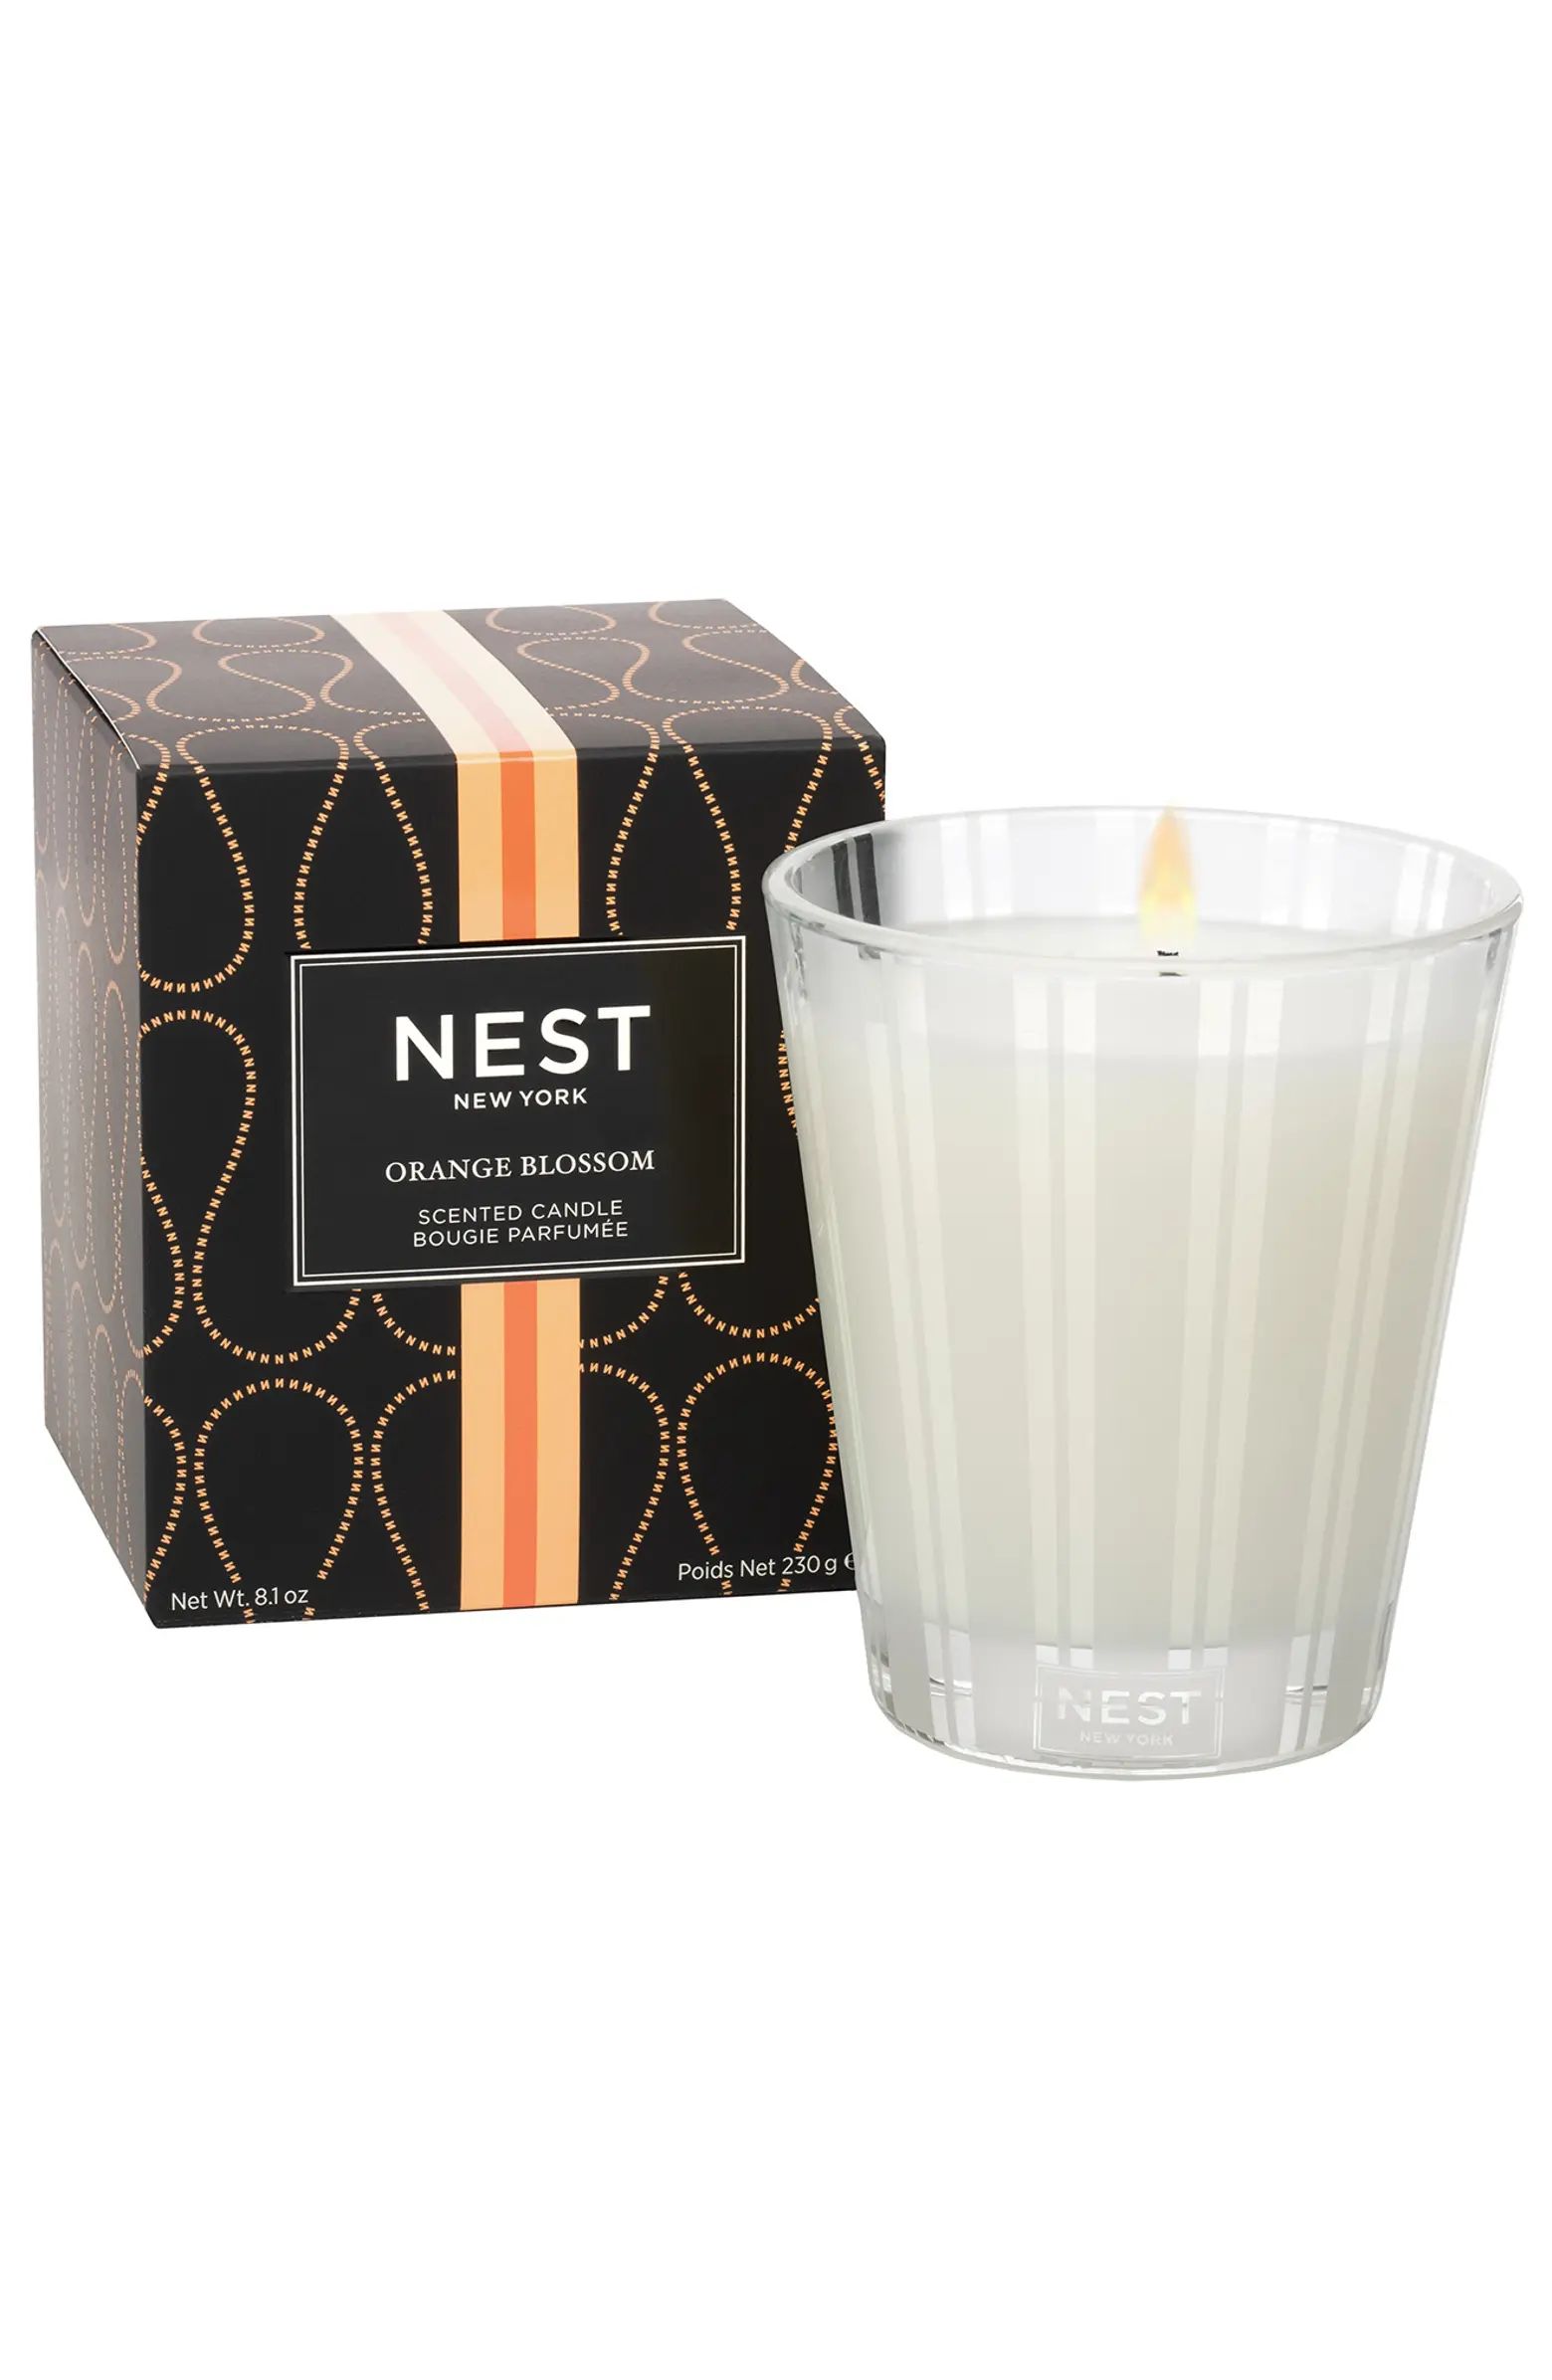 NEST Orange Blossom 8oz. Candle | Nordstrom Rack